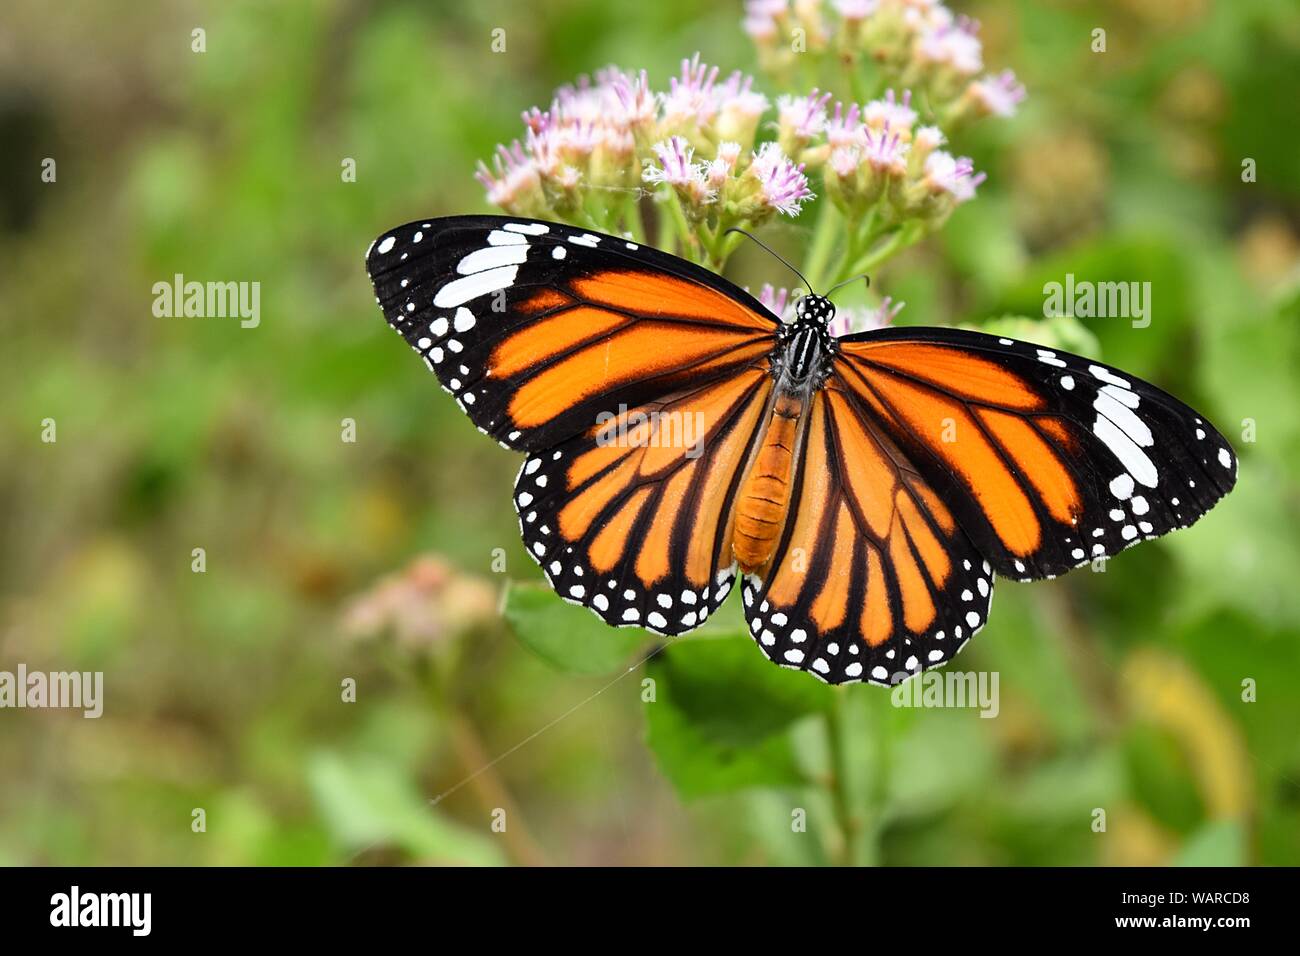 Naranja con patrón de color blanco y negro en el ala de mariposa, tigre común mariposa monarca buscan néctar en flor con fondo verde natural Foto de stock